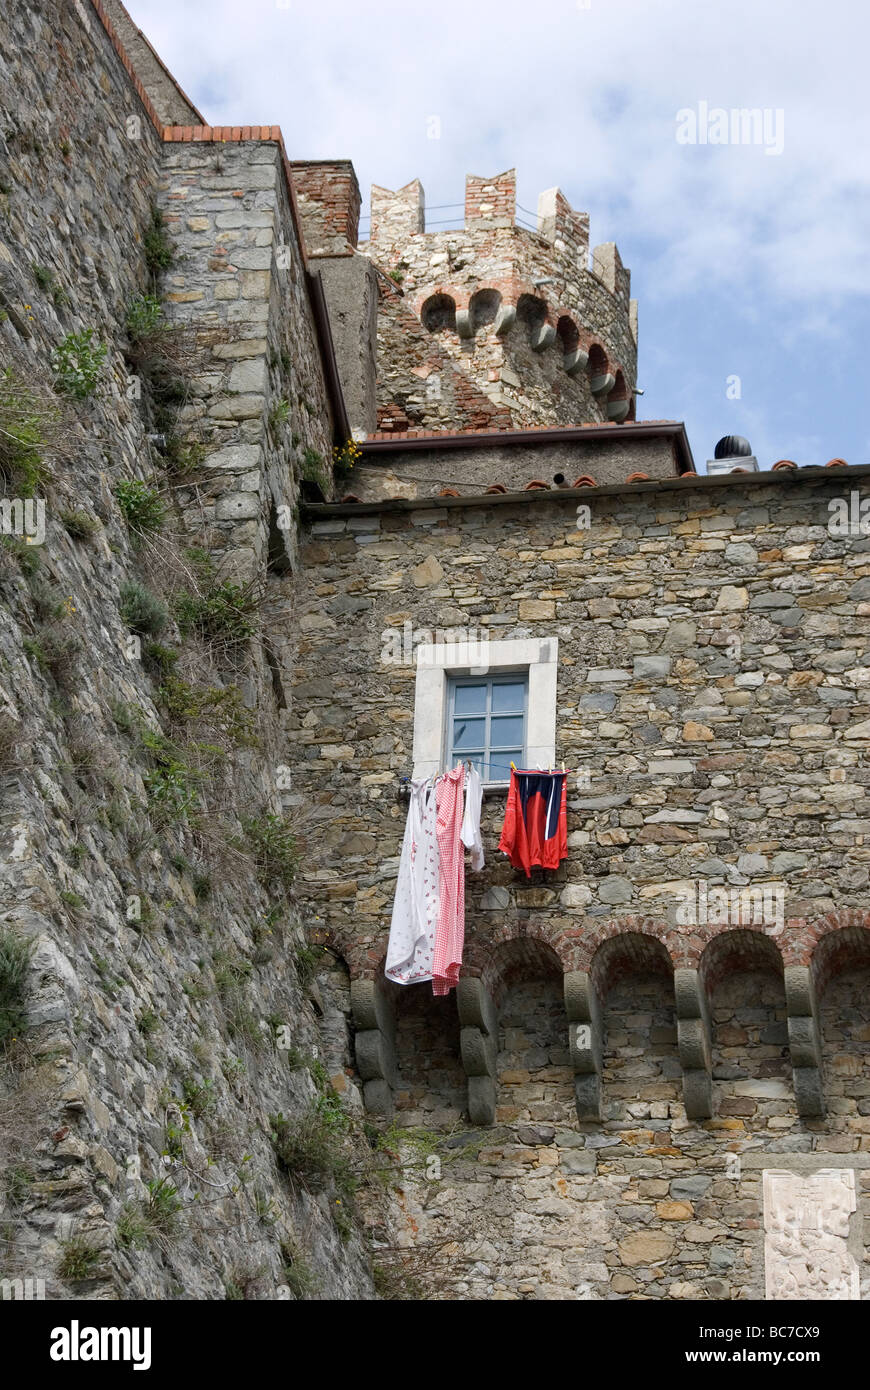 Gegenüberstellung der täglichen Wäsche hängen aus dem Fenster einer massiven mittelalterlichen Burg, die Jahrhunderte alt ist Stockfoto